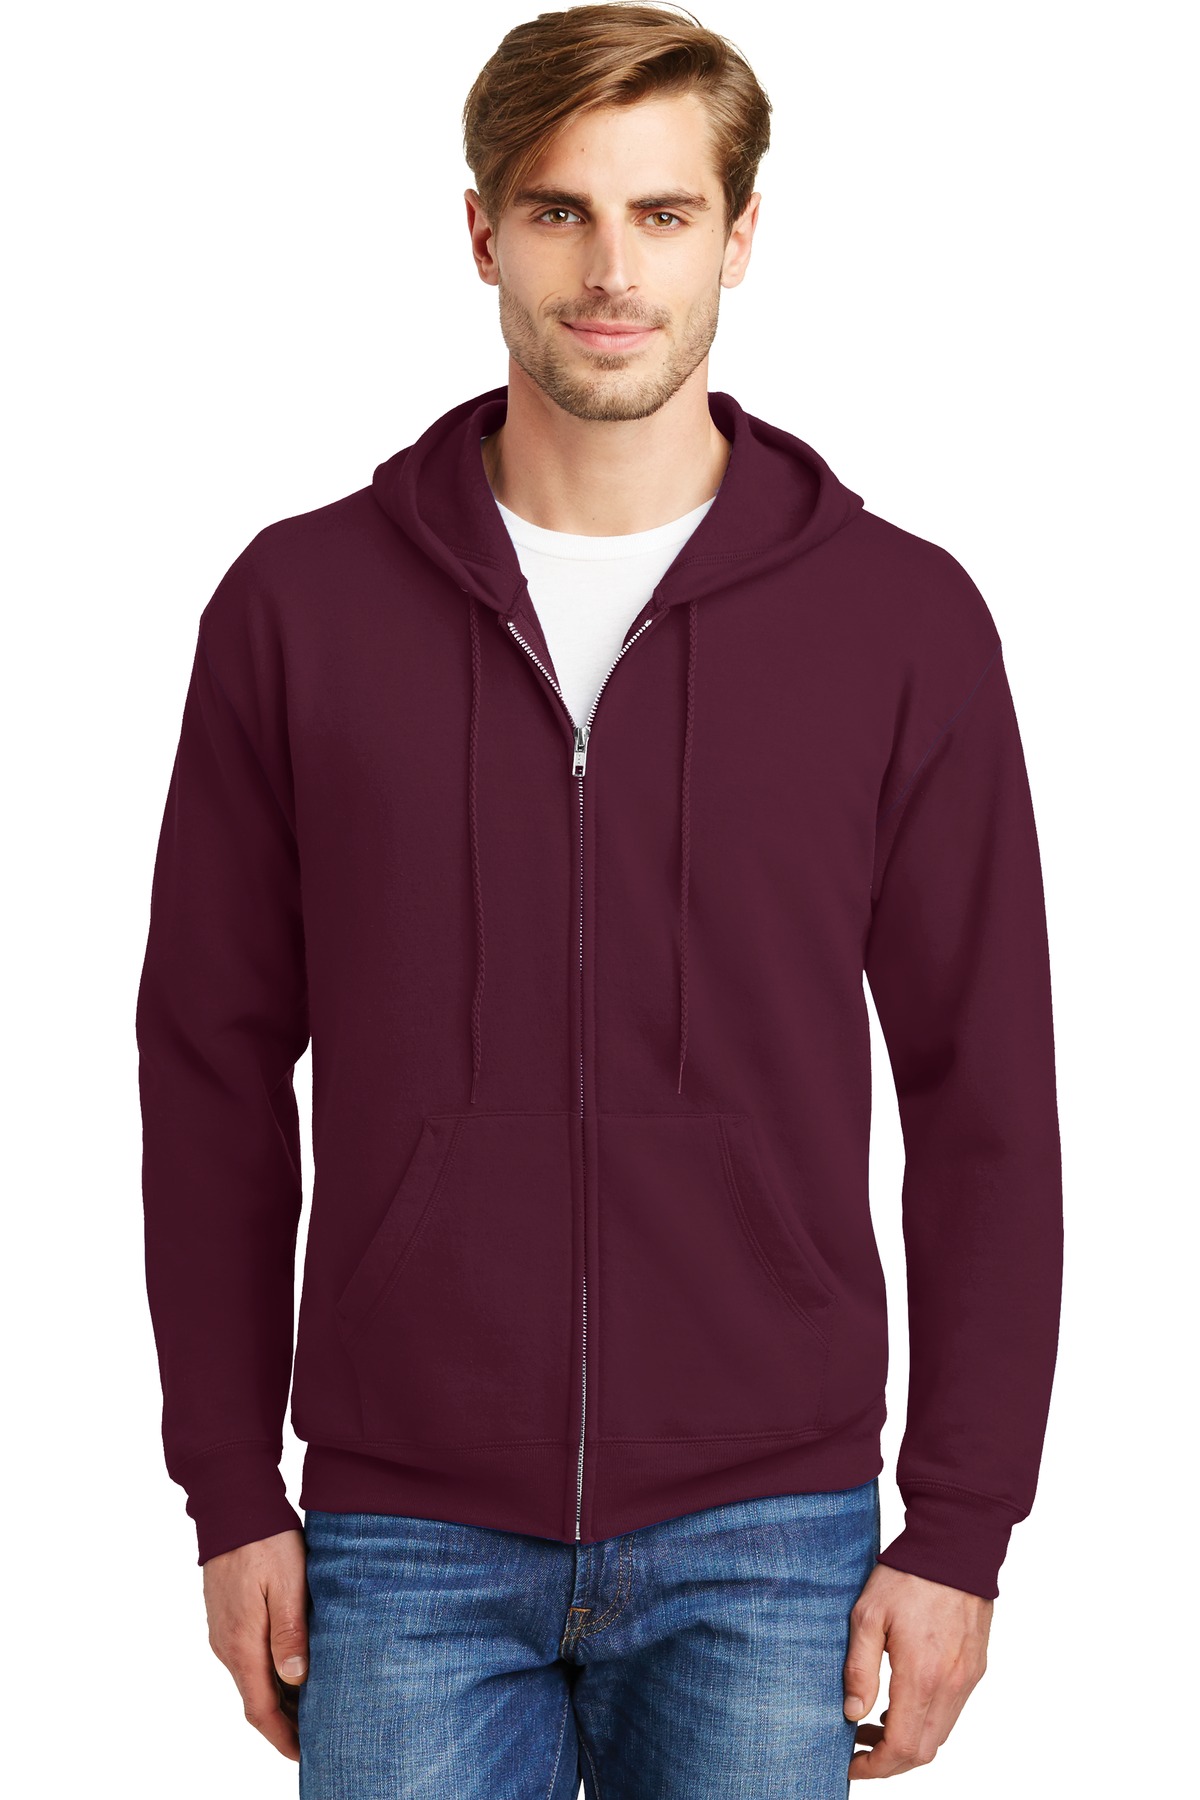 Hanes - EcoSmart Full-Zip Hooded Sweatshirt. P180